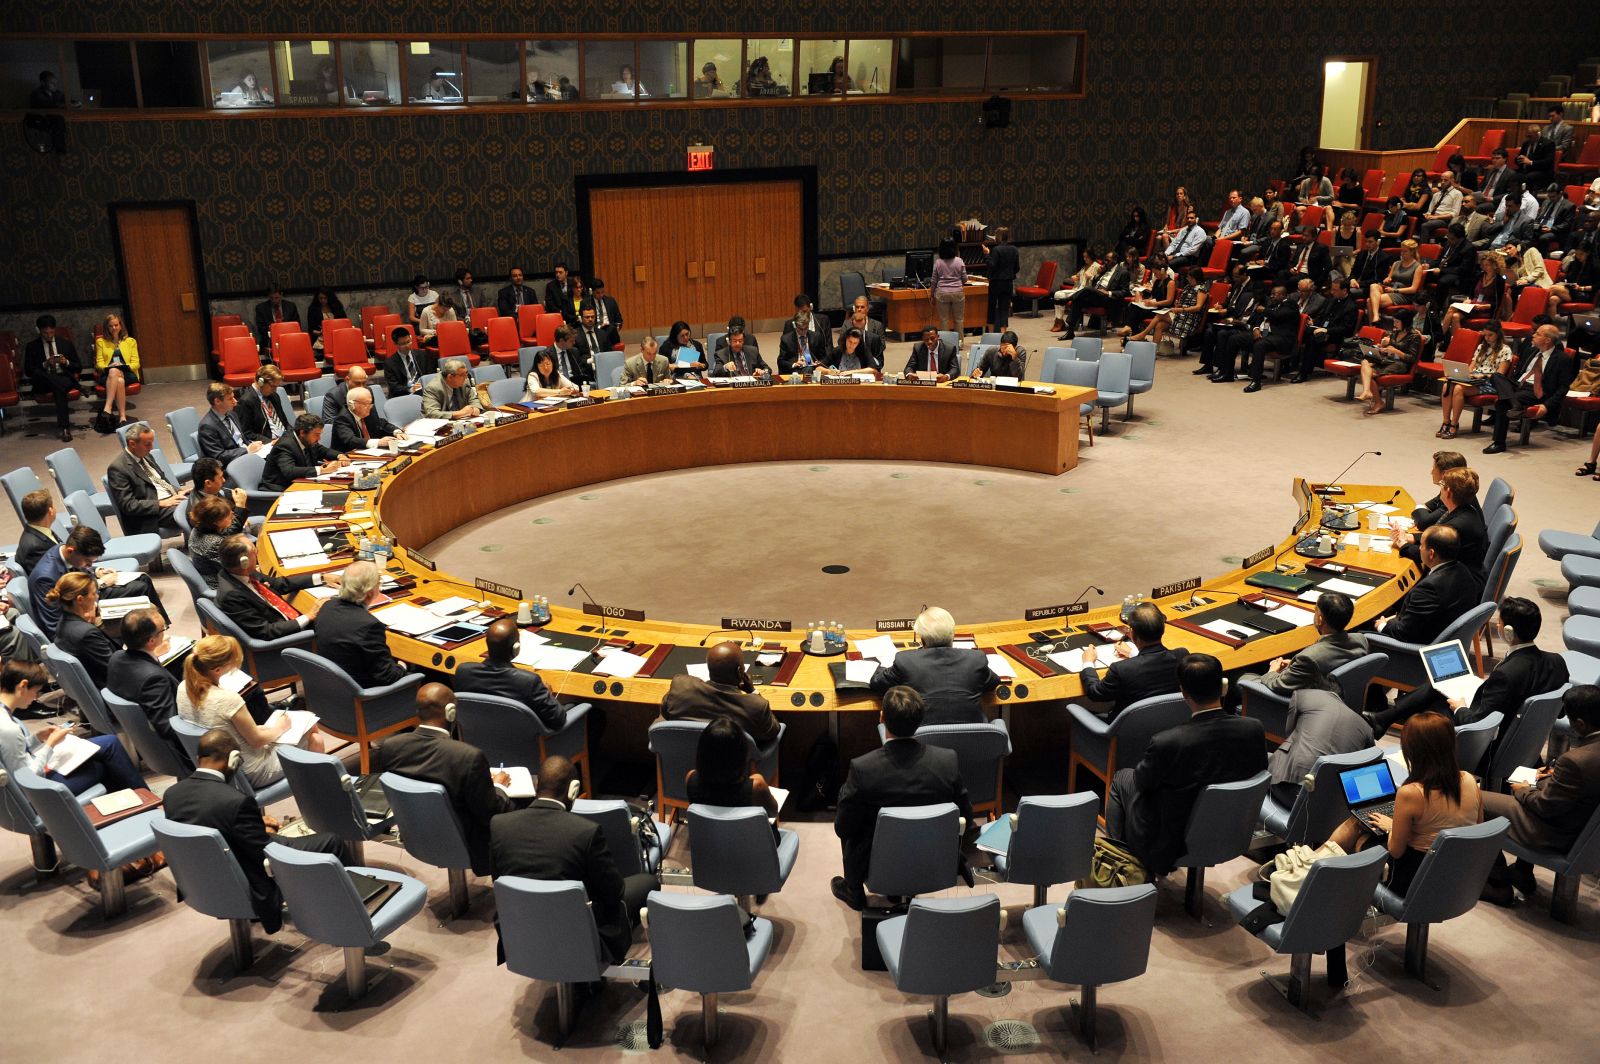 دبلوماسيون: الأمم المتحدة على وشك التوصل لاتفاق بشأن فرض عقوبات جديدة على بيونجيانج